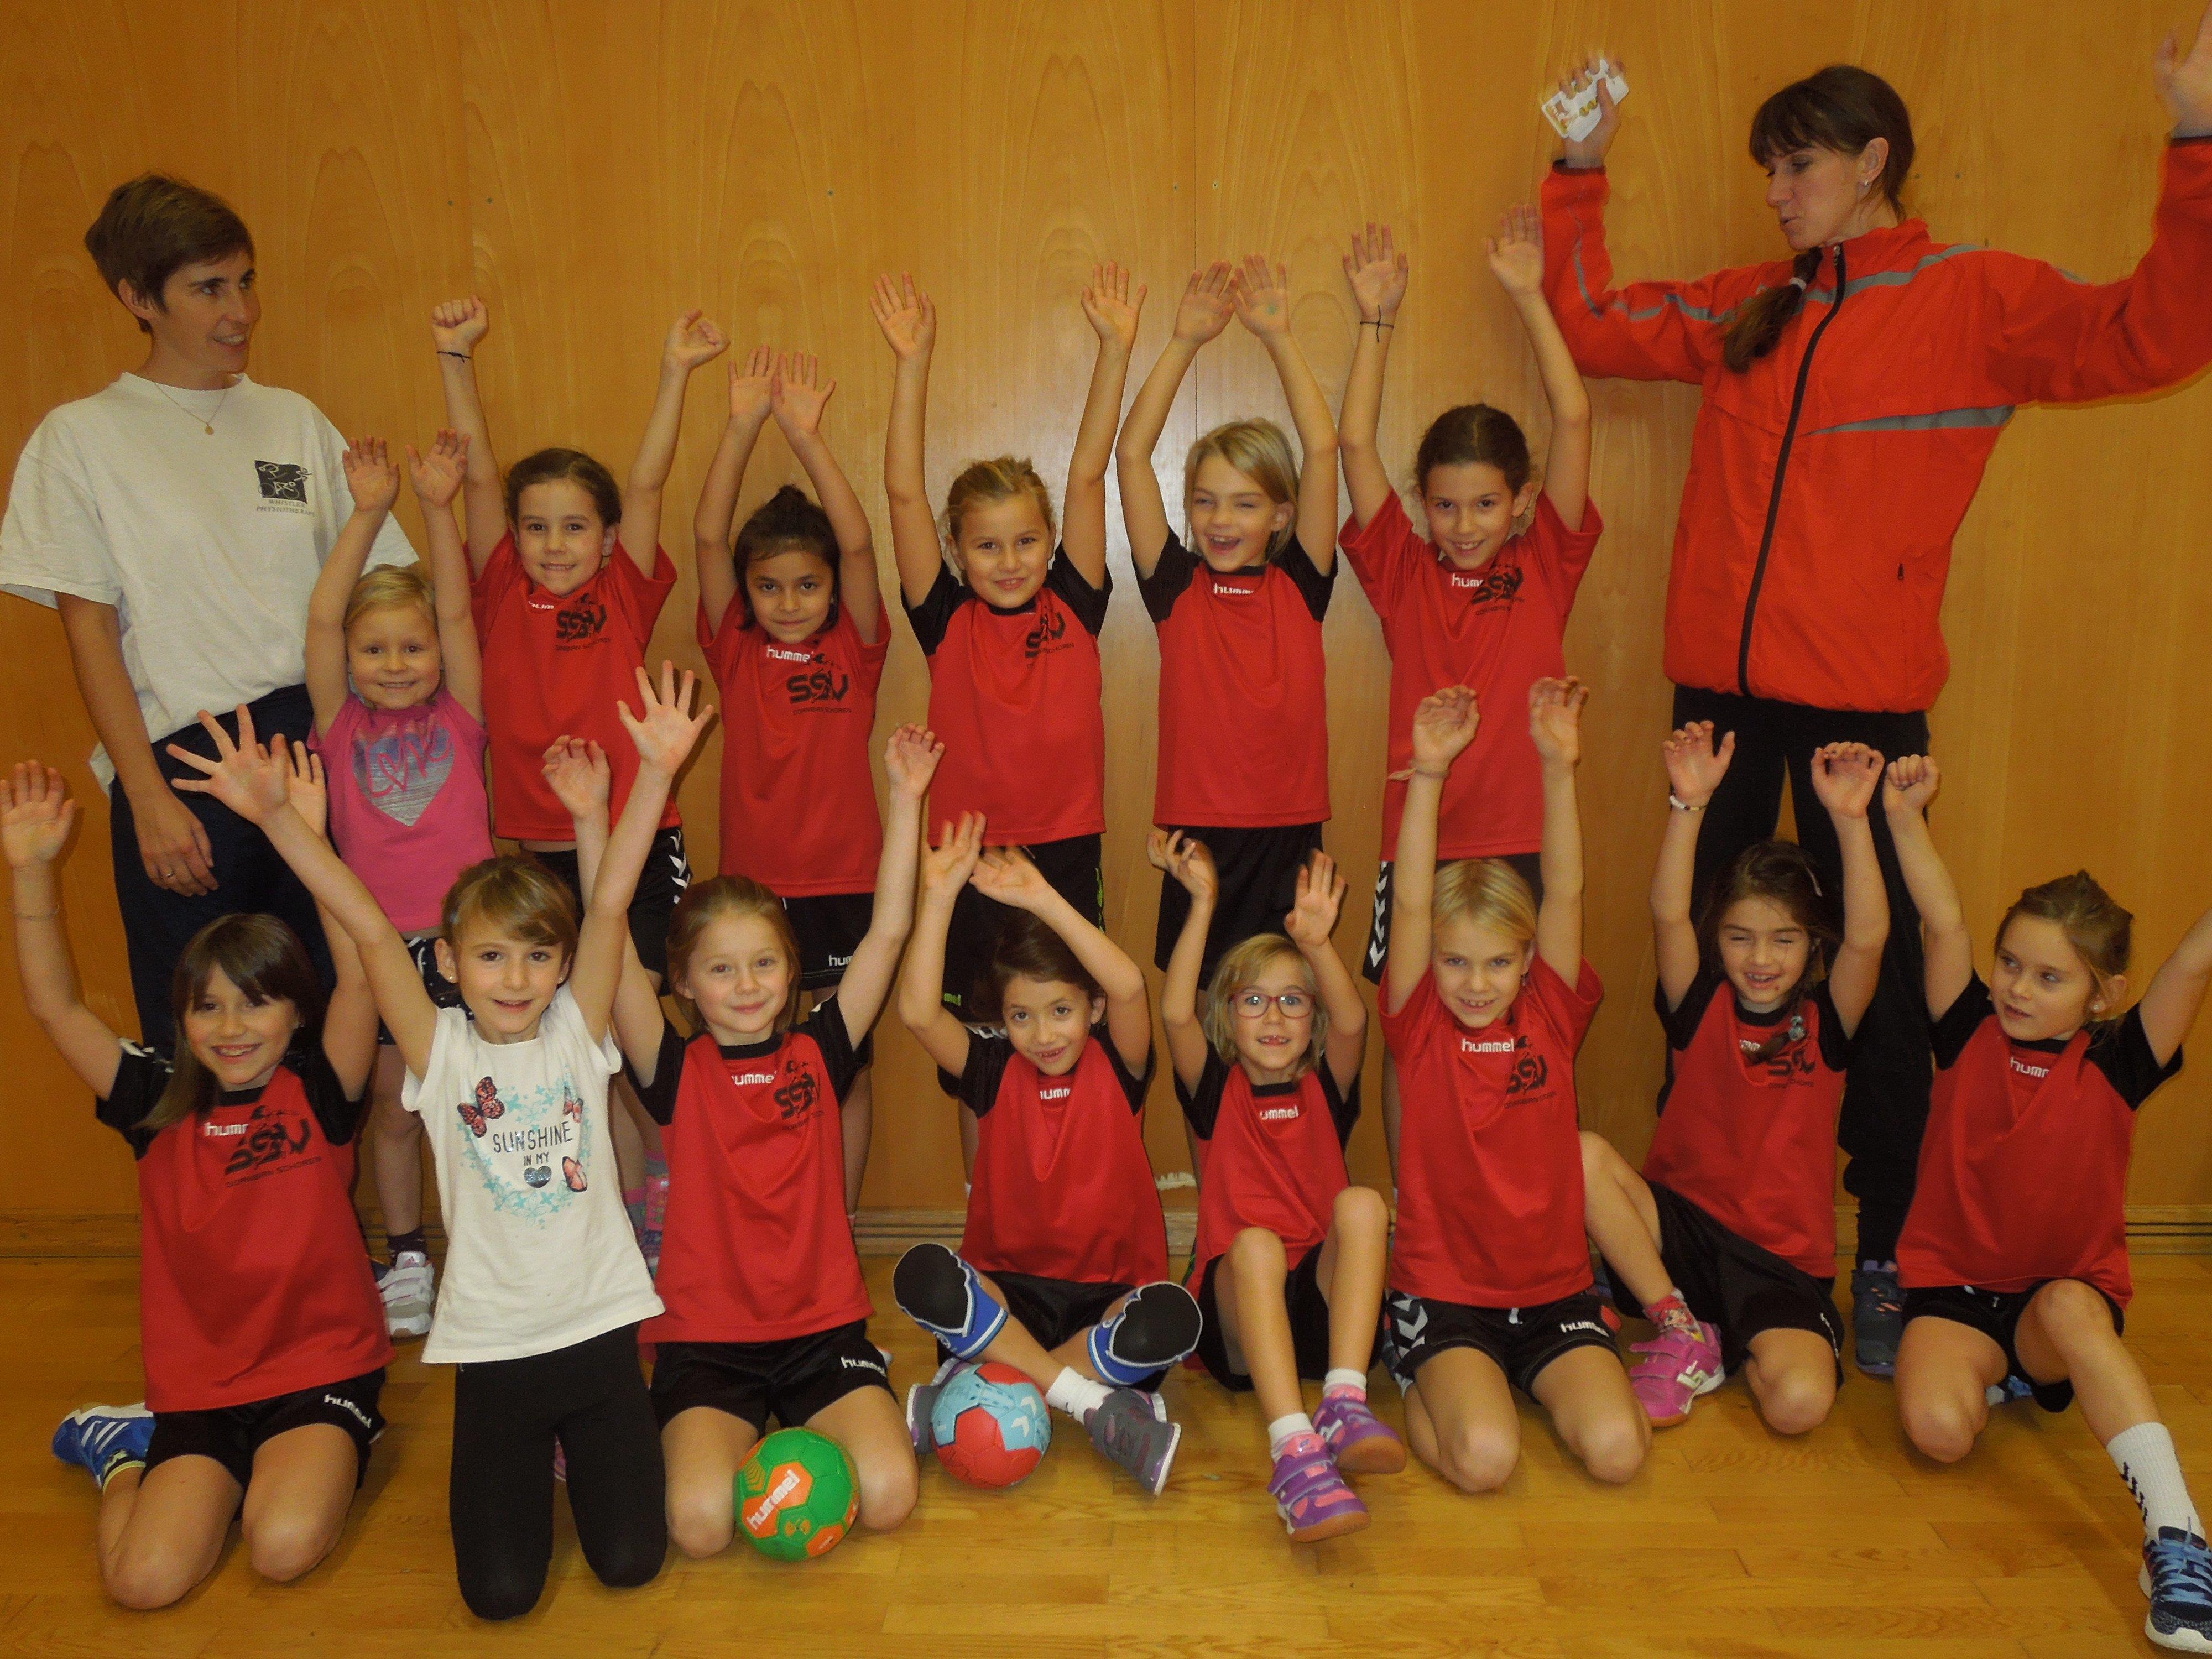 Spielen, Spaß, Teamgeist und Fairness stehen im Vordergrund beim Training der jüngsten Handballerinnen beim SSV Dornbirn.